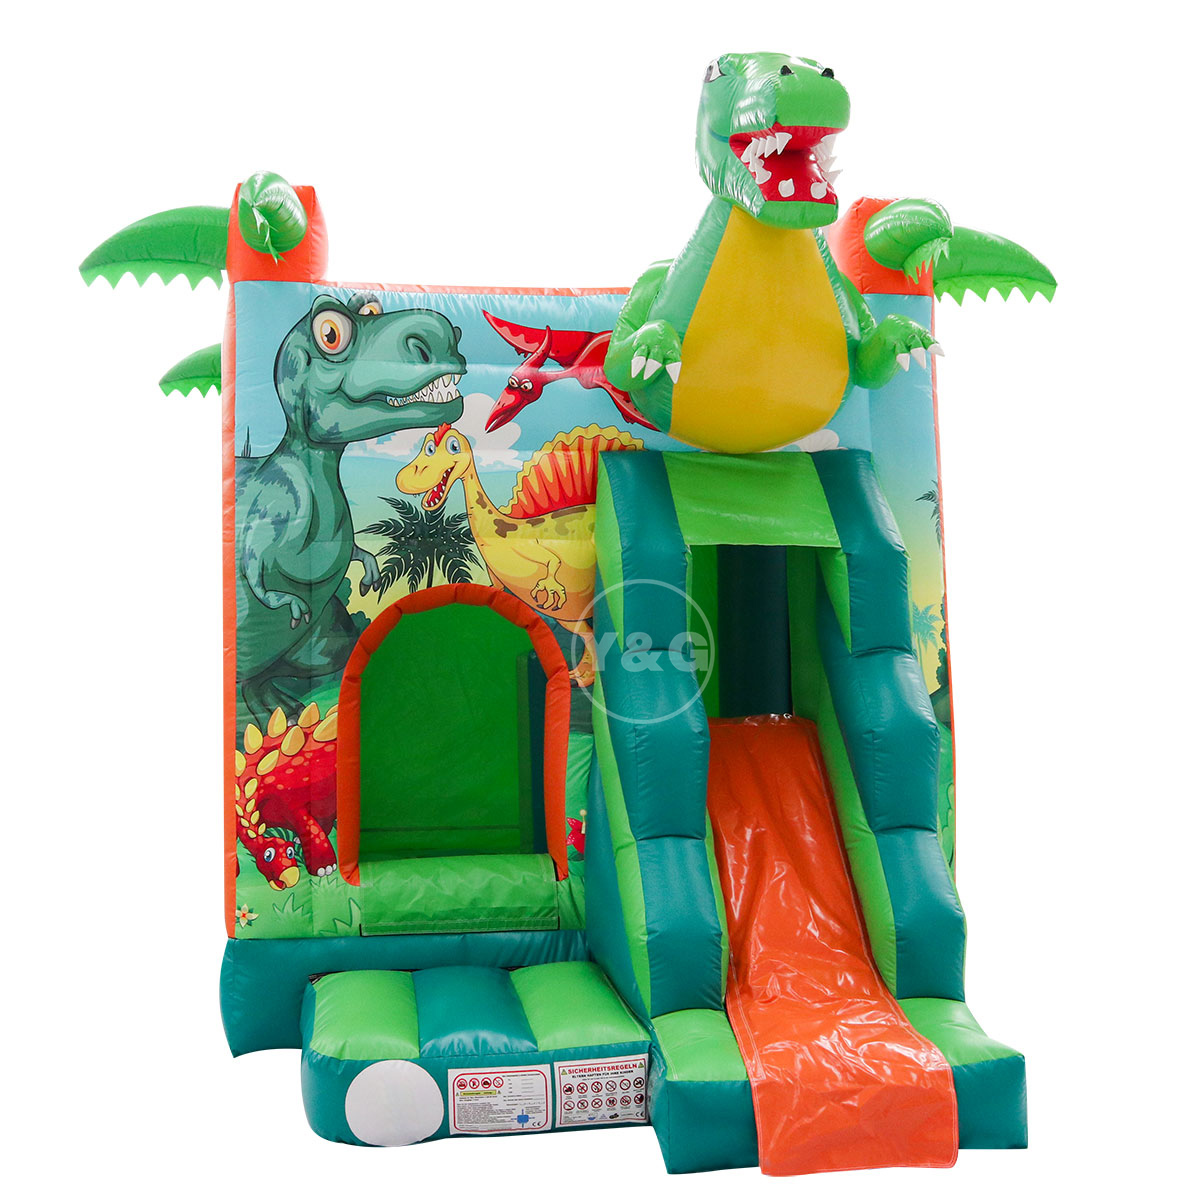 Fun Dinosaur Inflatable Bounce HouseYG-133